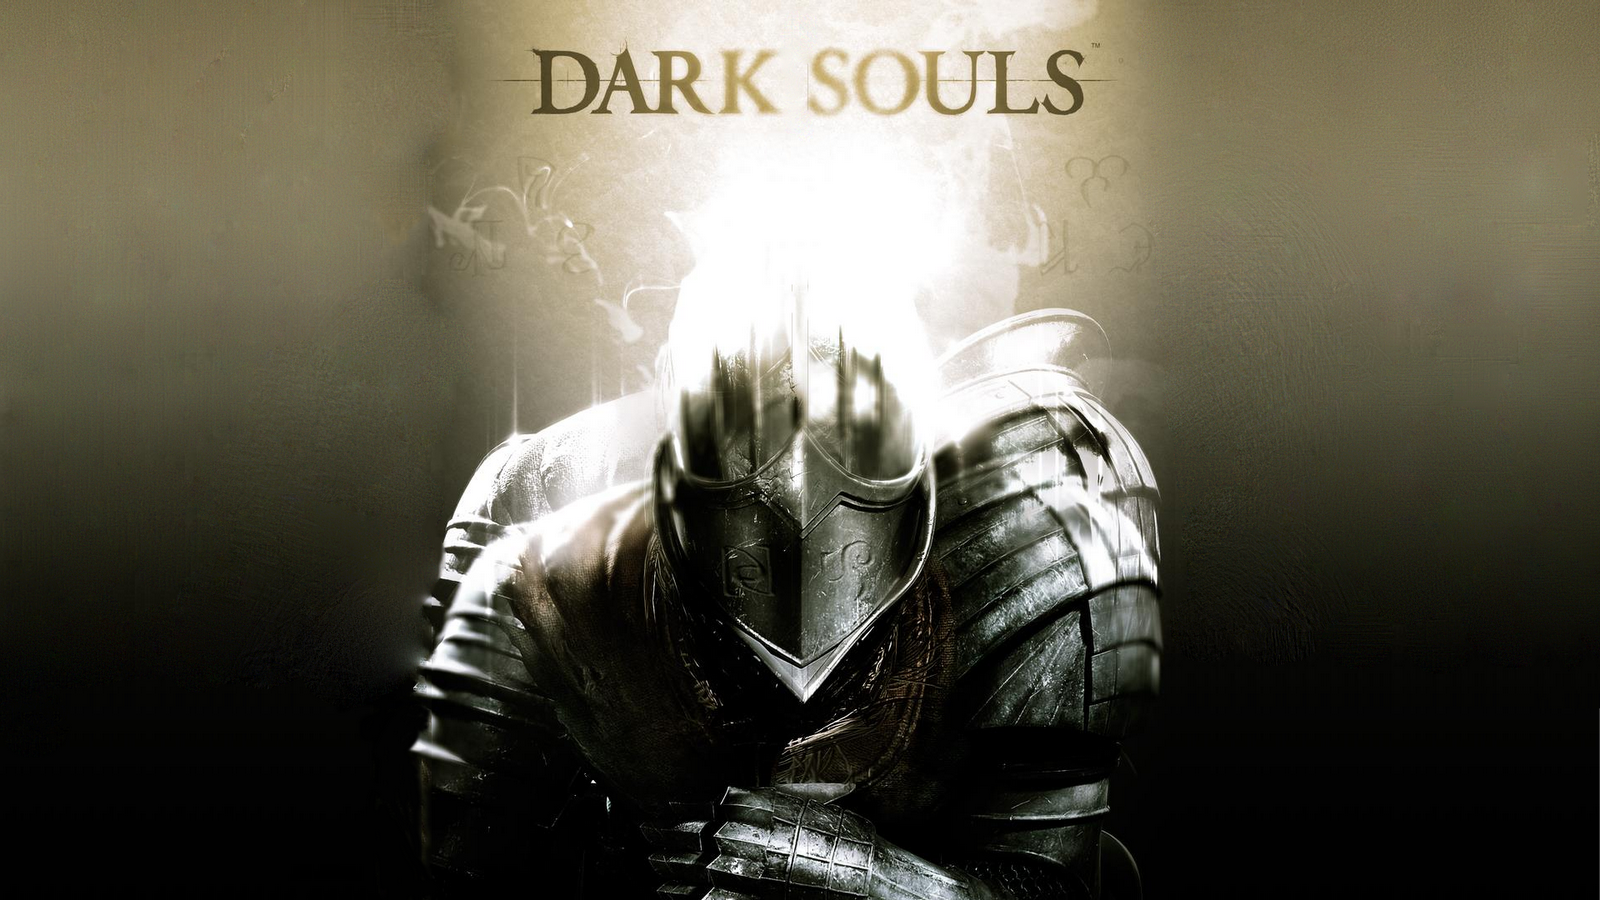 wallpapers de dark souls en hd dark souls es un juego para ps3 lleno